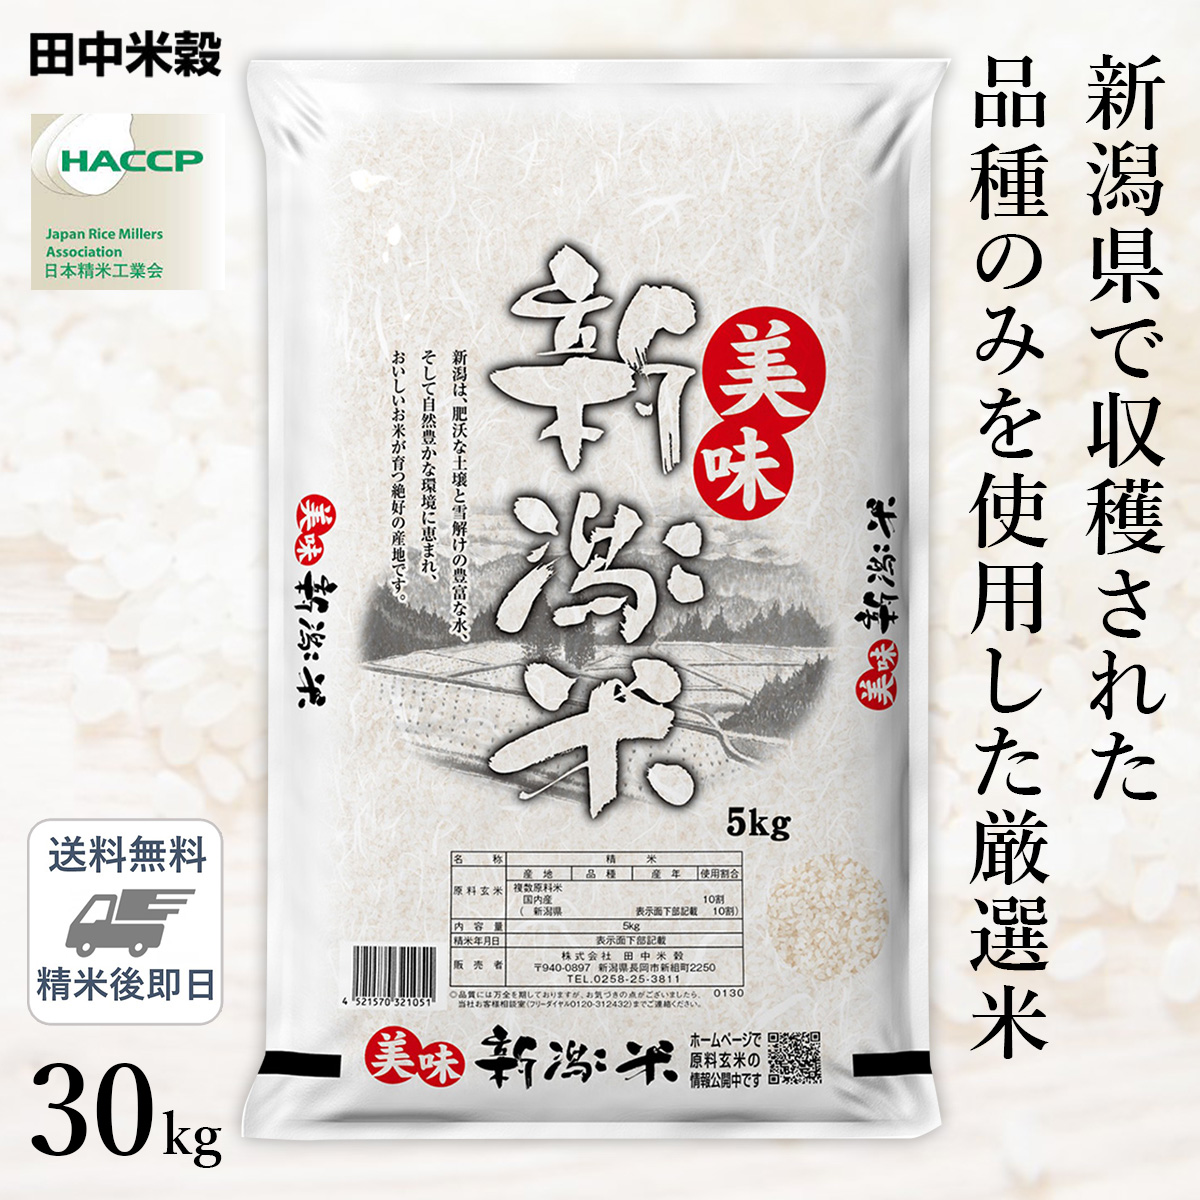 □【送料無料】令和5年産 新潟県産 美味新潟米 30kg(5kg×6袋) 精米仕立て